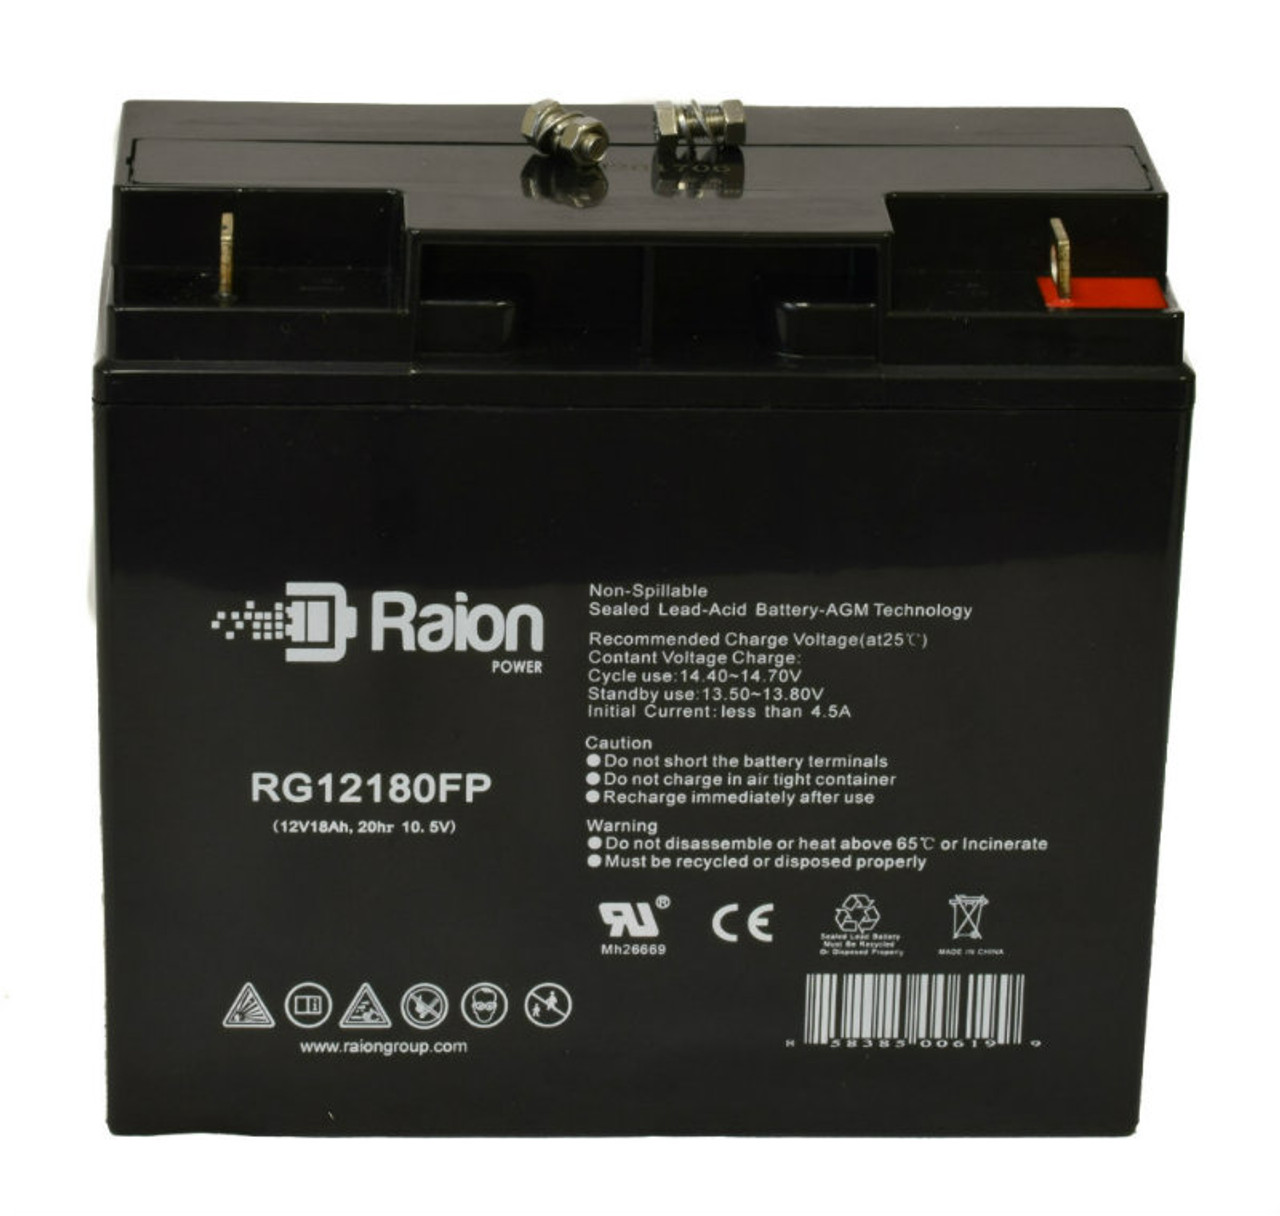 Raion Power RG12180FP 12V 18Ah Lead Acid Battery for Dragon X21